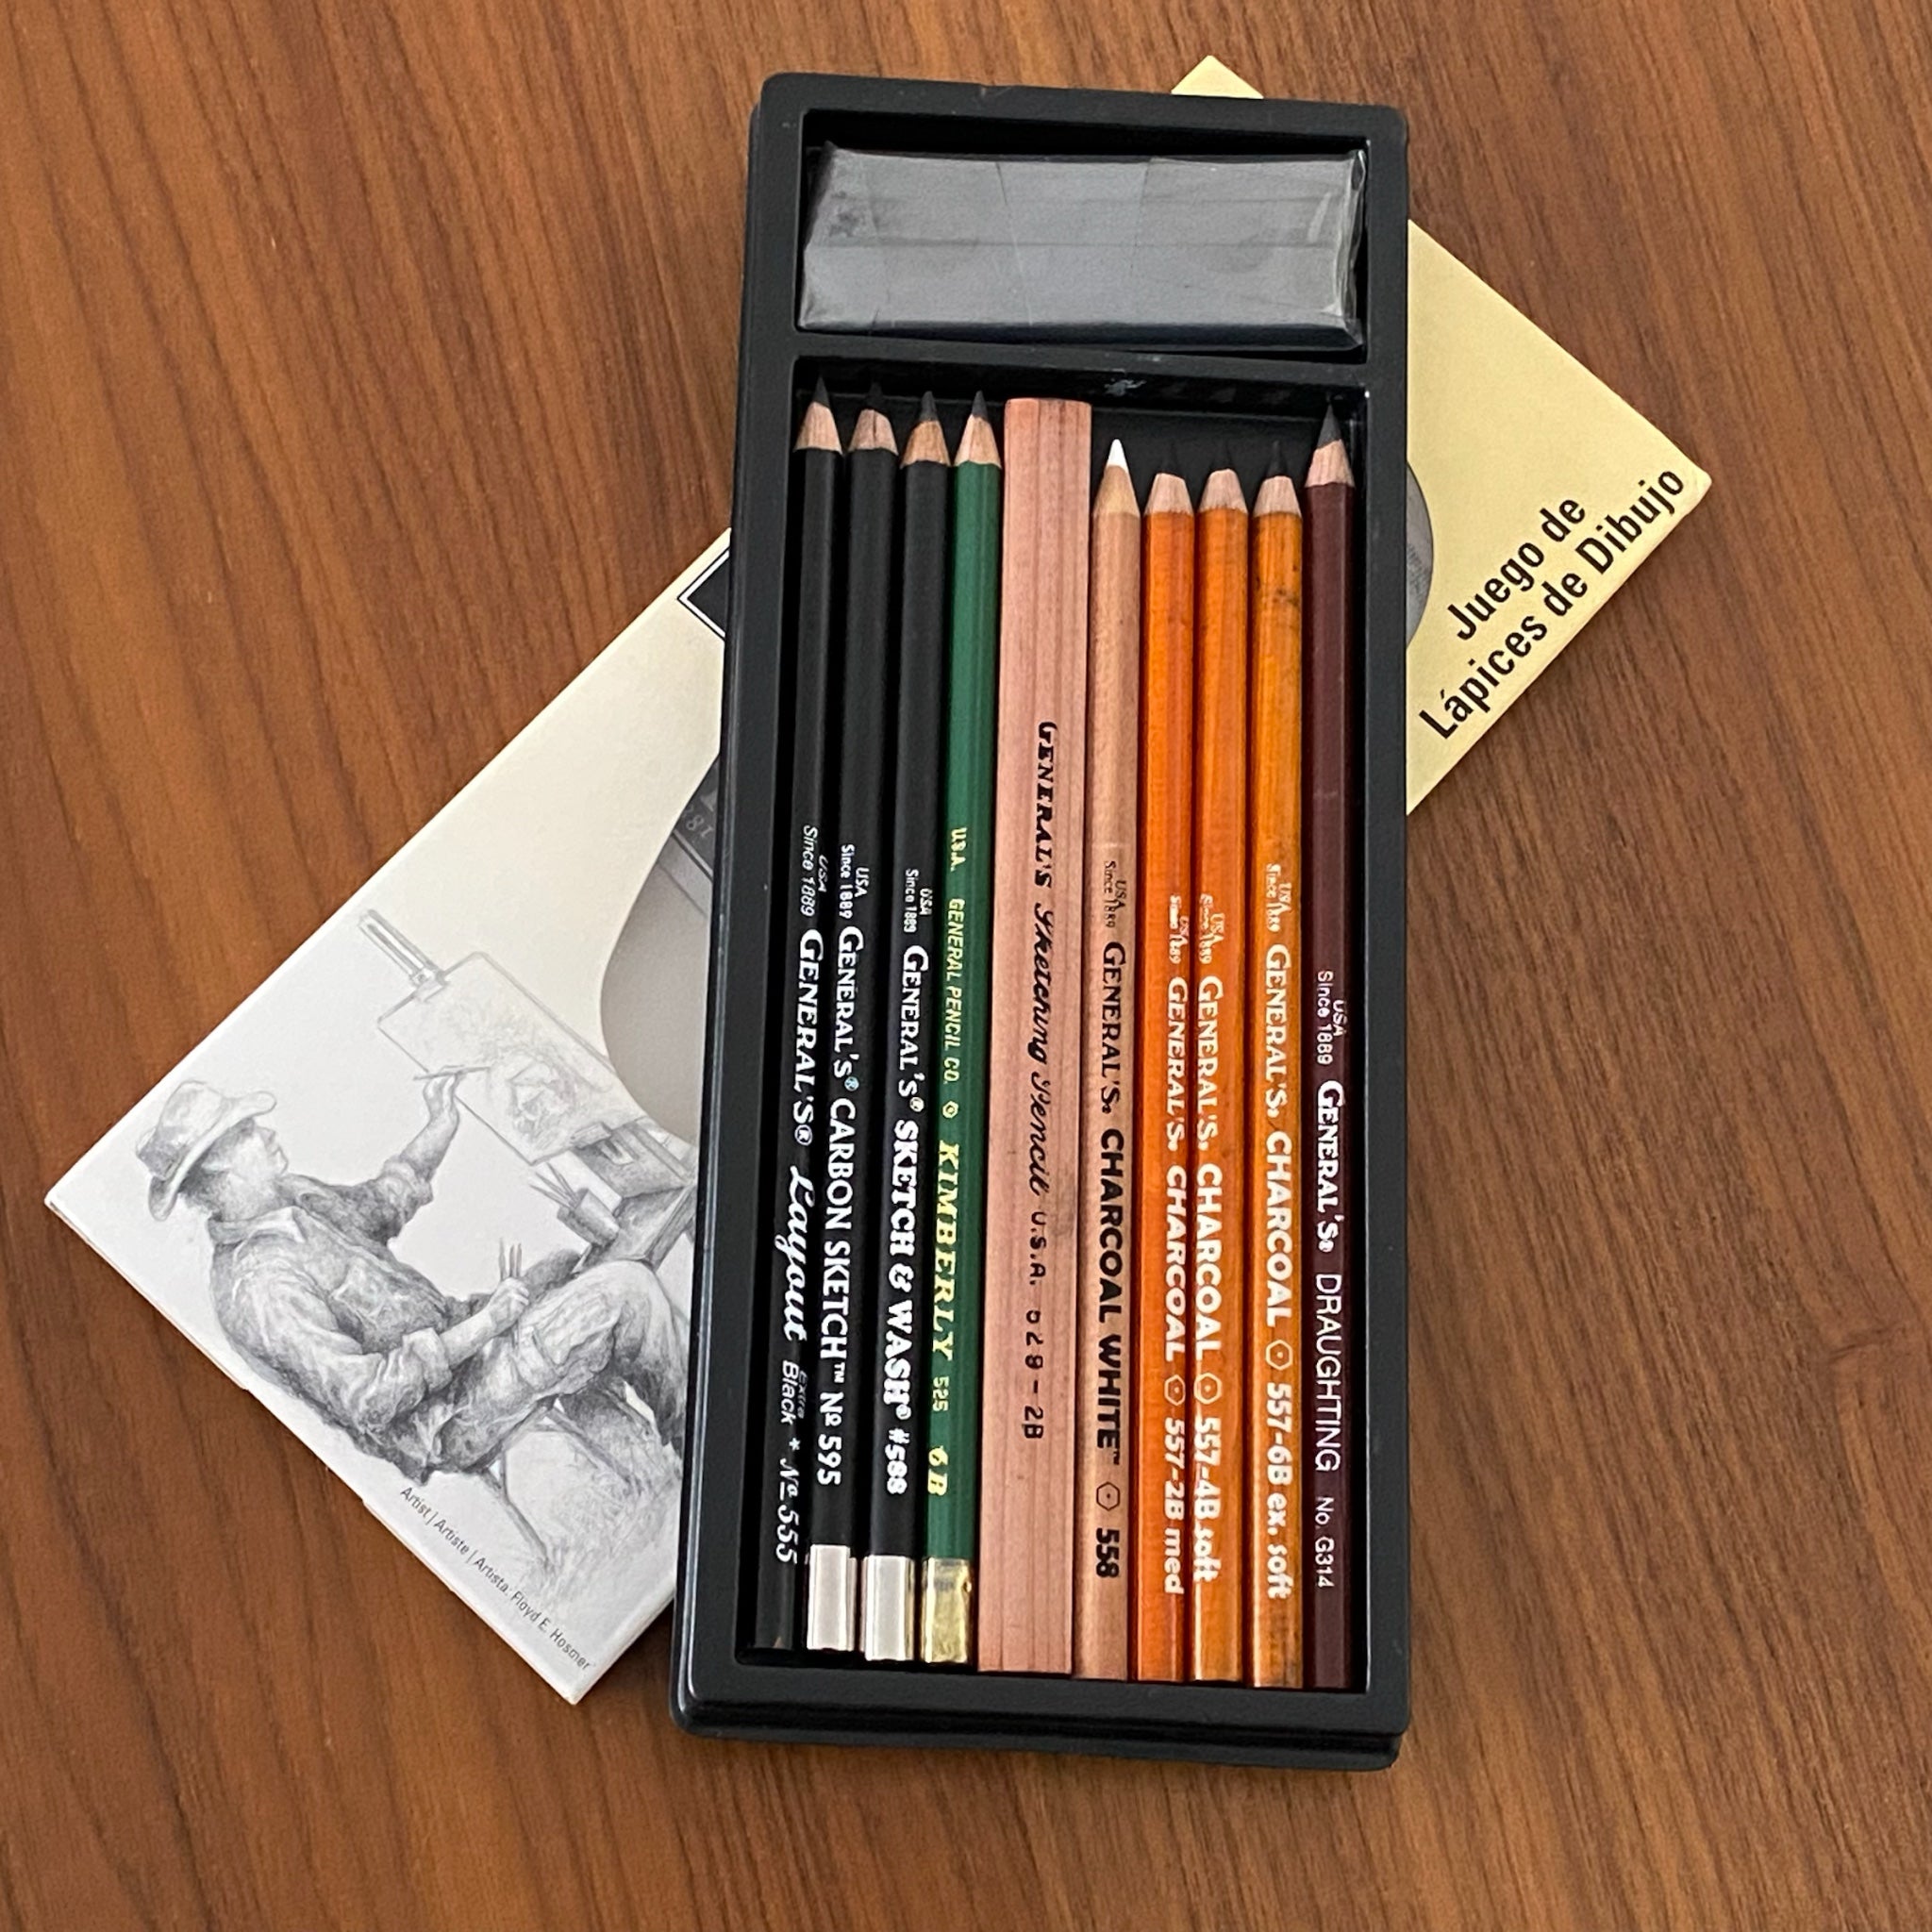 Caja lápices dibujo Lyra Sketching set